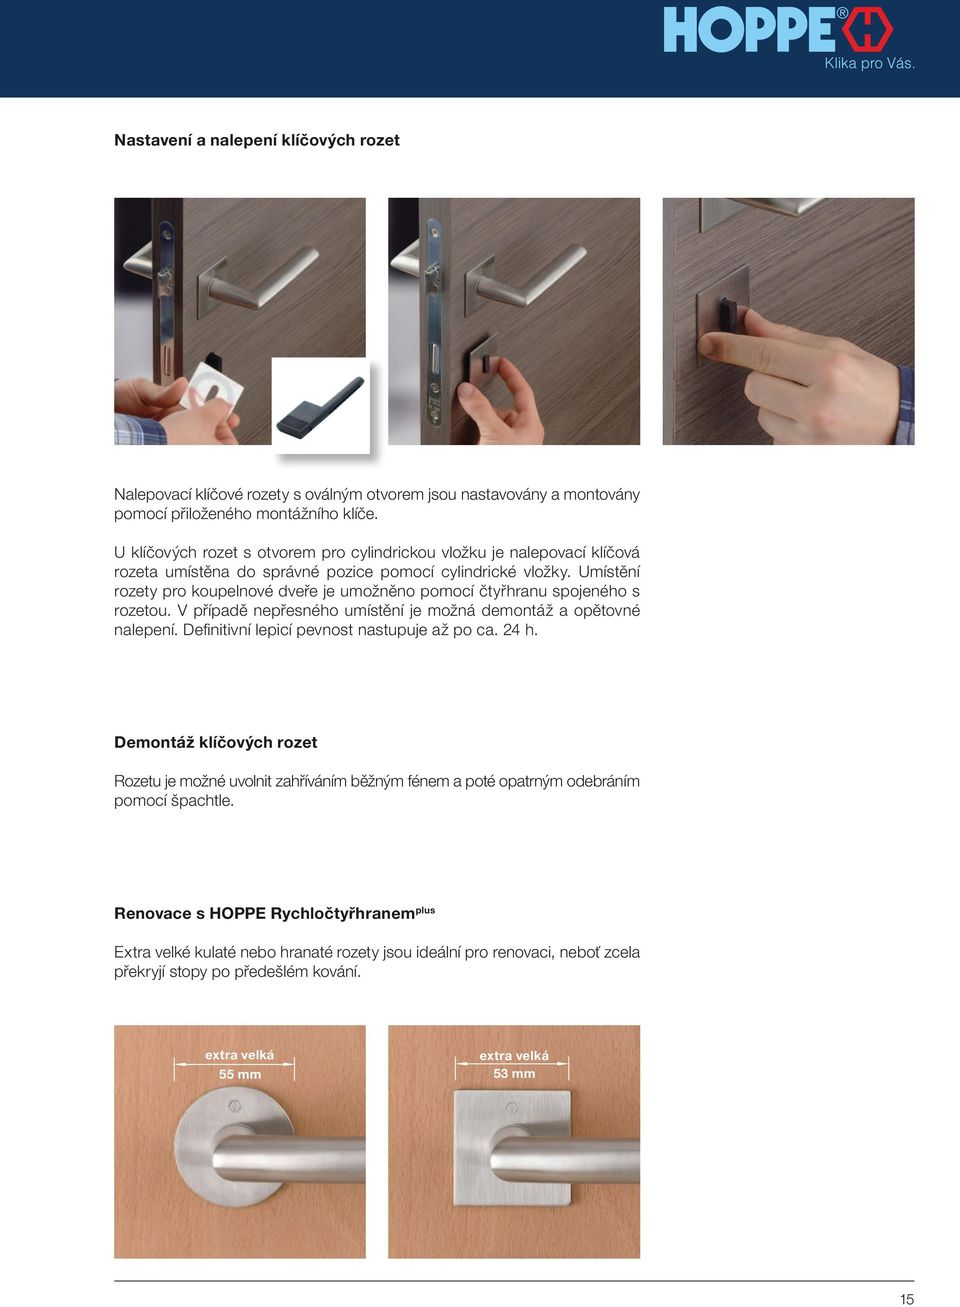 Umístění rozety pro koupelnové dveře je umožněno pomocí čtyřhranu spojeného s rozetou. V případě nepřesného umístění je možná demontáž a opětovné nalepení.